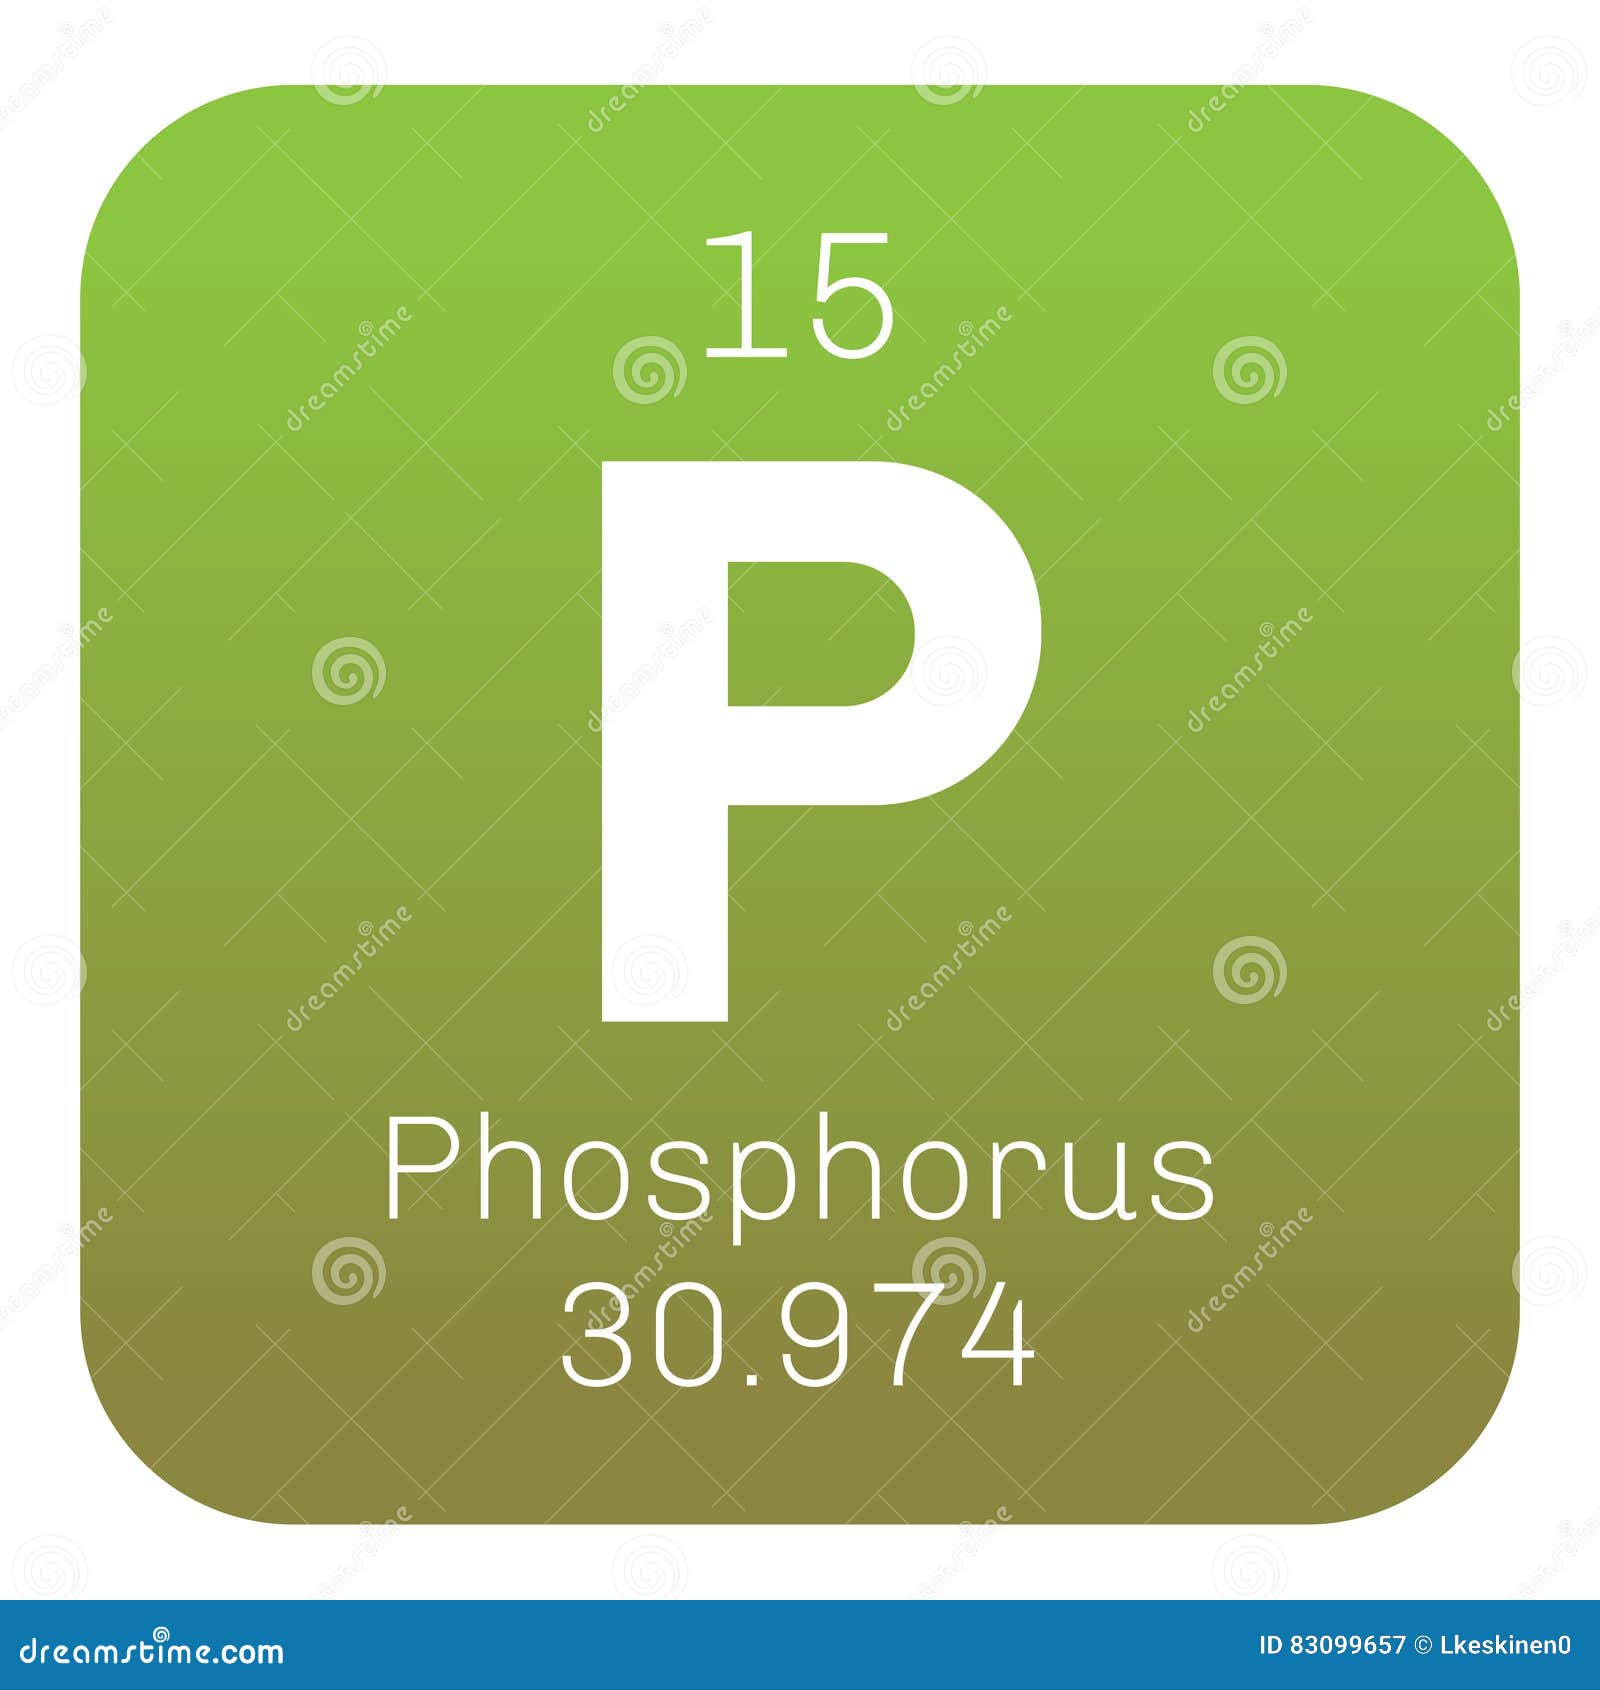 План химического элемента фосфор. Фосфор элемент. Фосфор химический элемент. Химический знак фосфора. Фосфор символ элемента.